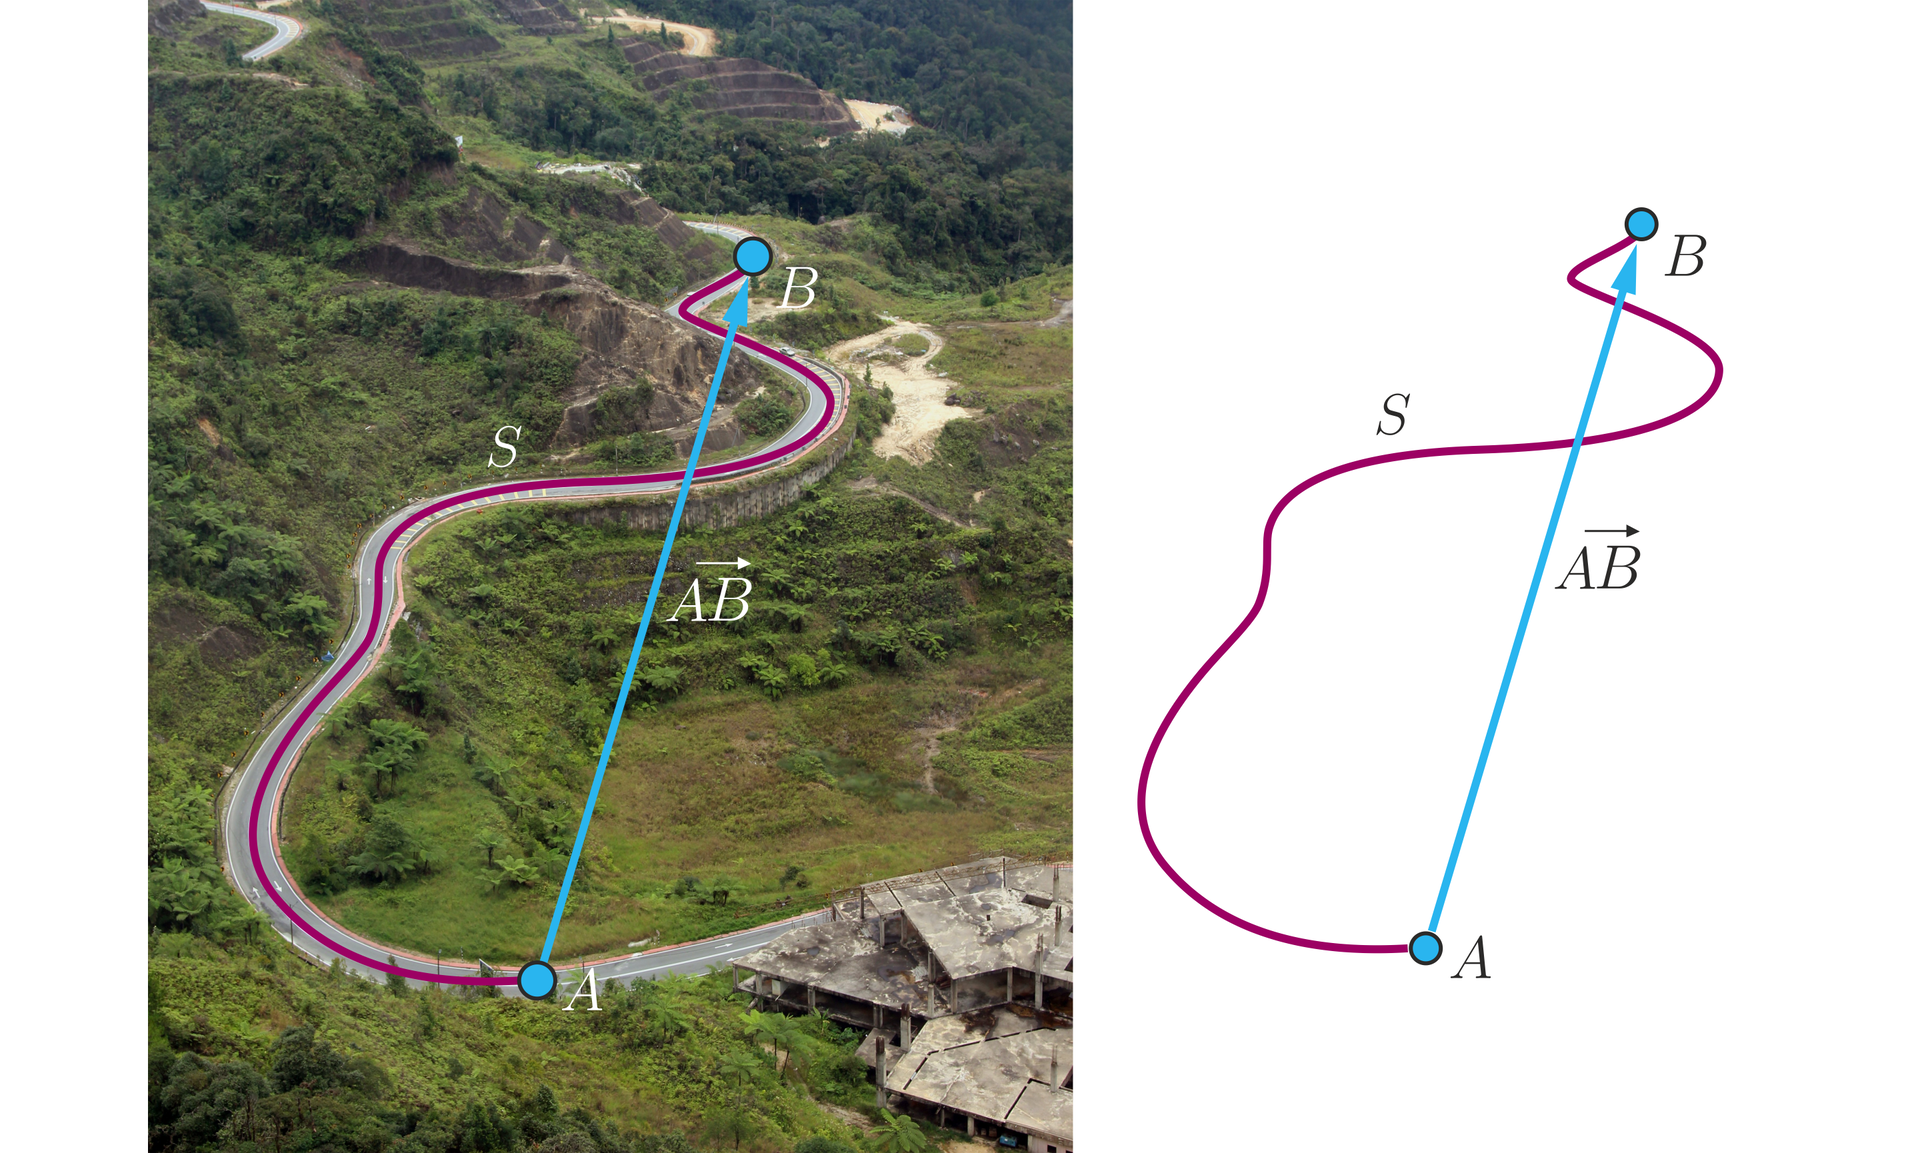 Ilustracja składa się z dwóch części. Lewa strona przedstawia zdjęcie drogi w zielonym terenie górzystym. Droga jest kręta i wiedzie z naniesionego graficznie punktu A znajdującego na niższym poziomie, do punktu B znajdującego się na wyższym poziomie. Na krętą drogę naniesiony jest fragment krzywej S w kształcie tej drogi. Z punktu A poprowadzony jest również wektor o końcu w punkcie B. Grafika naniesiona na zdjęcie jest przedstawiona po lewej stronie na białym tle, przy czym oznaczenia pozostają takie same, jak na zdjęciu.